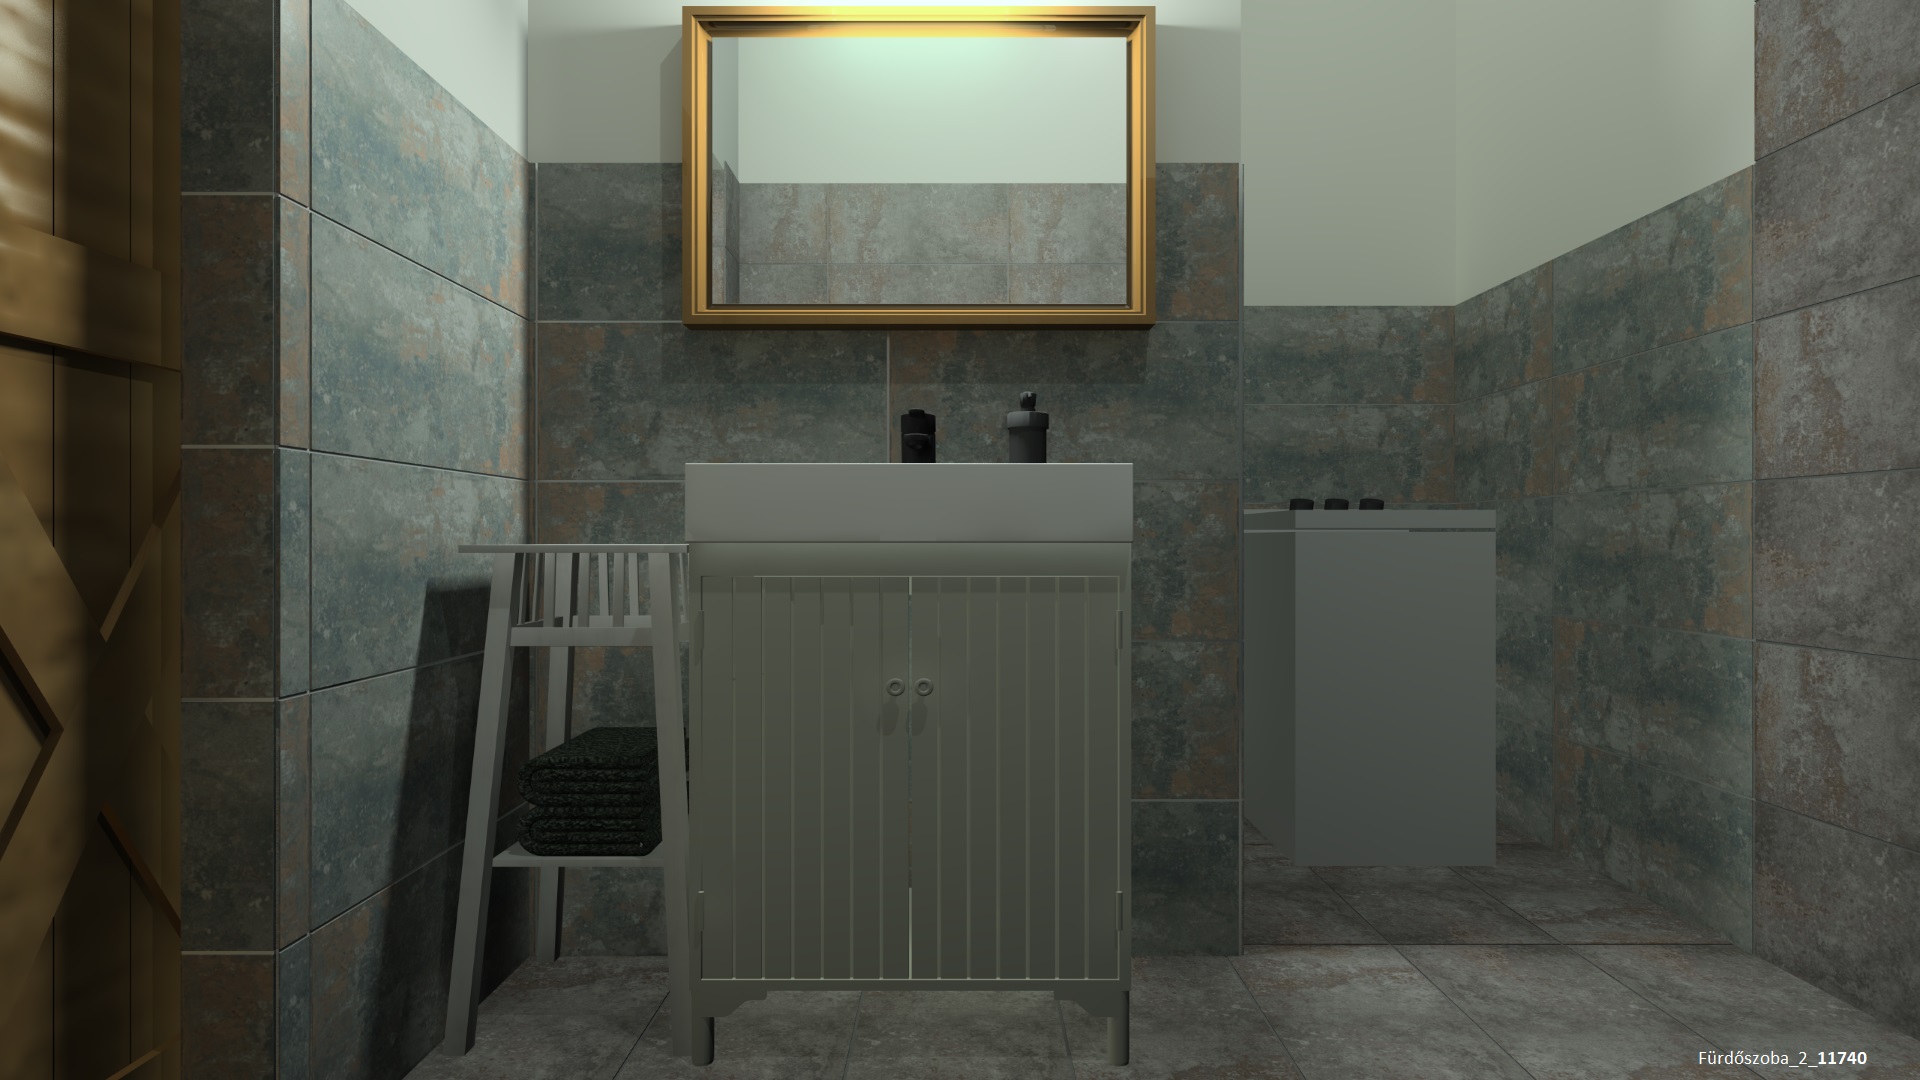 Fürdőszoba_2_11740.jpg